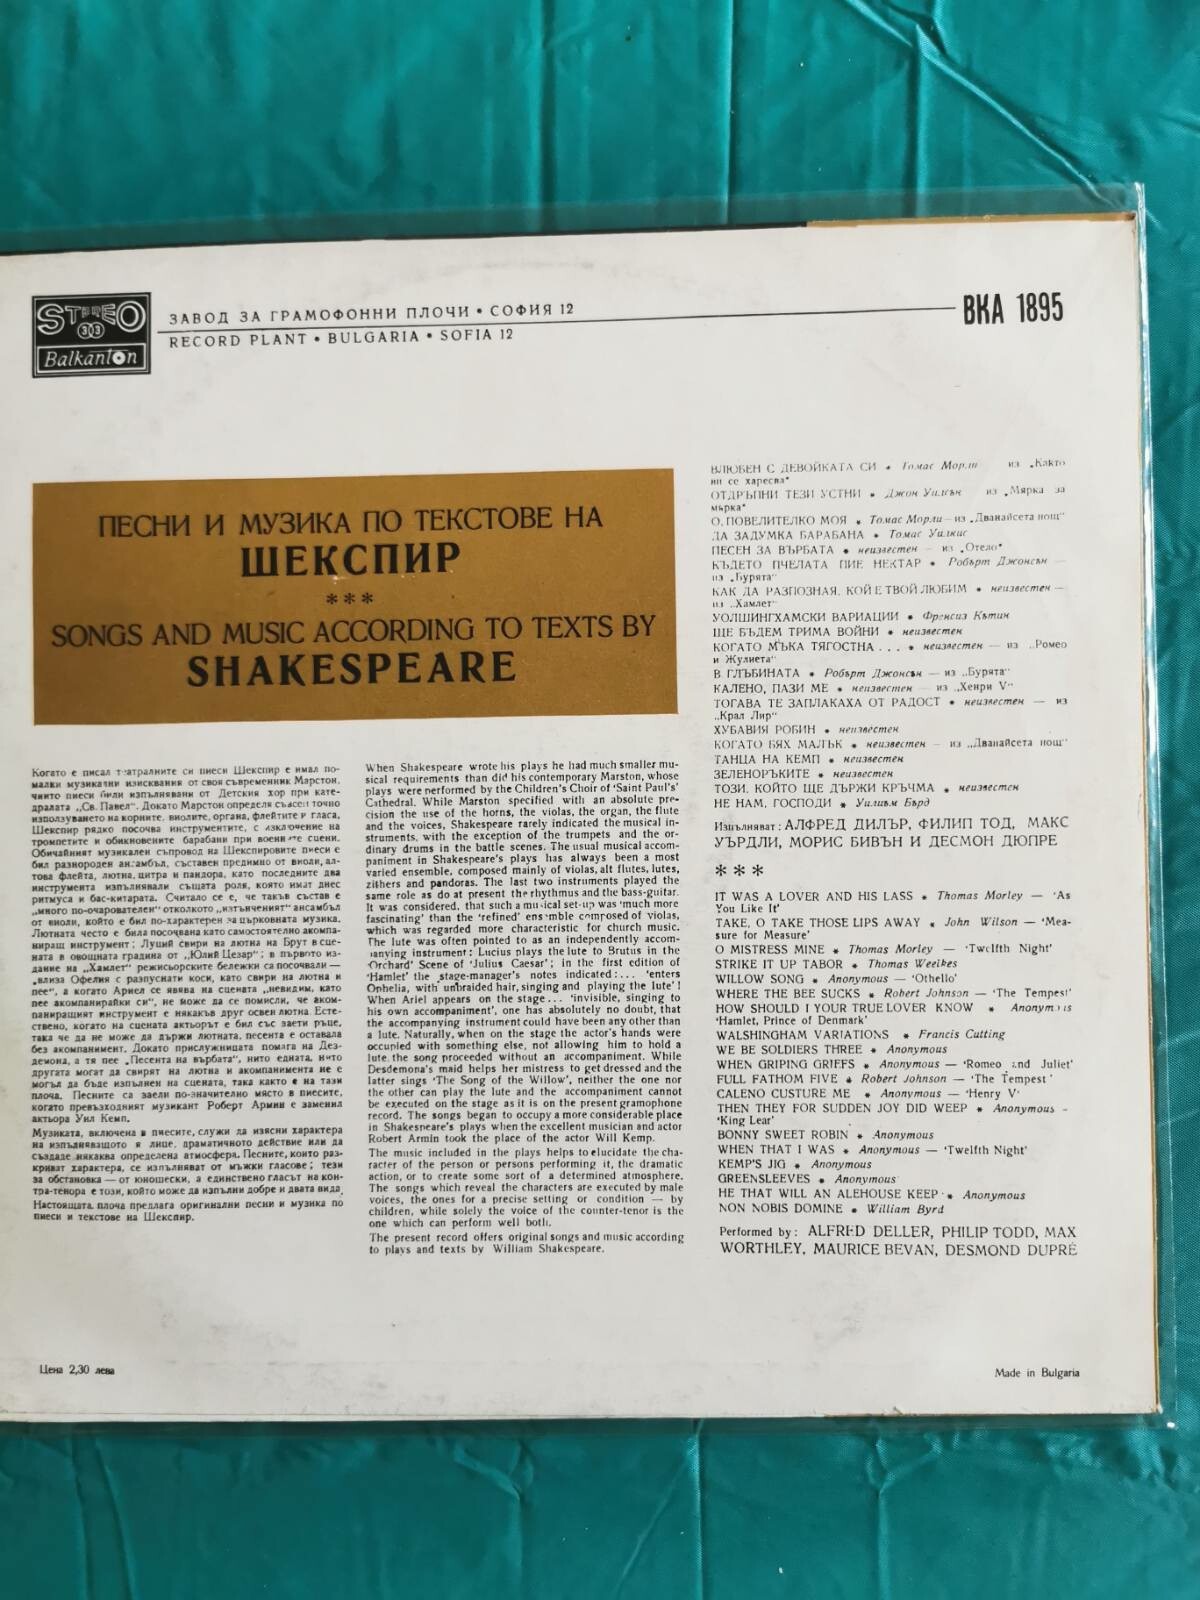 Песни и музика по текстове на Шекспир изпълняват Алфред Дилър, Филип Тод, Макс Уърдли, Морис Бивън и Десмон Дюпре